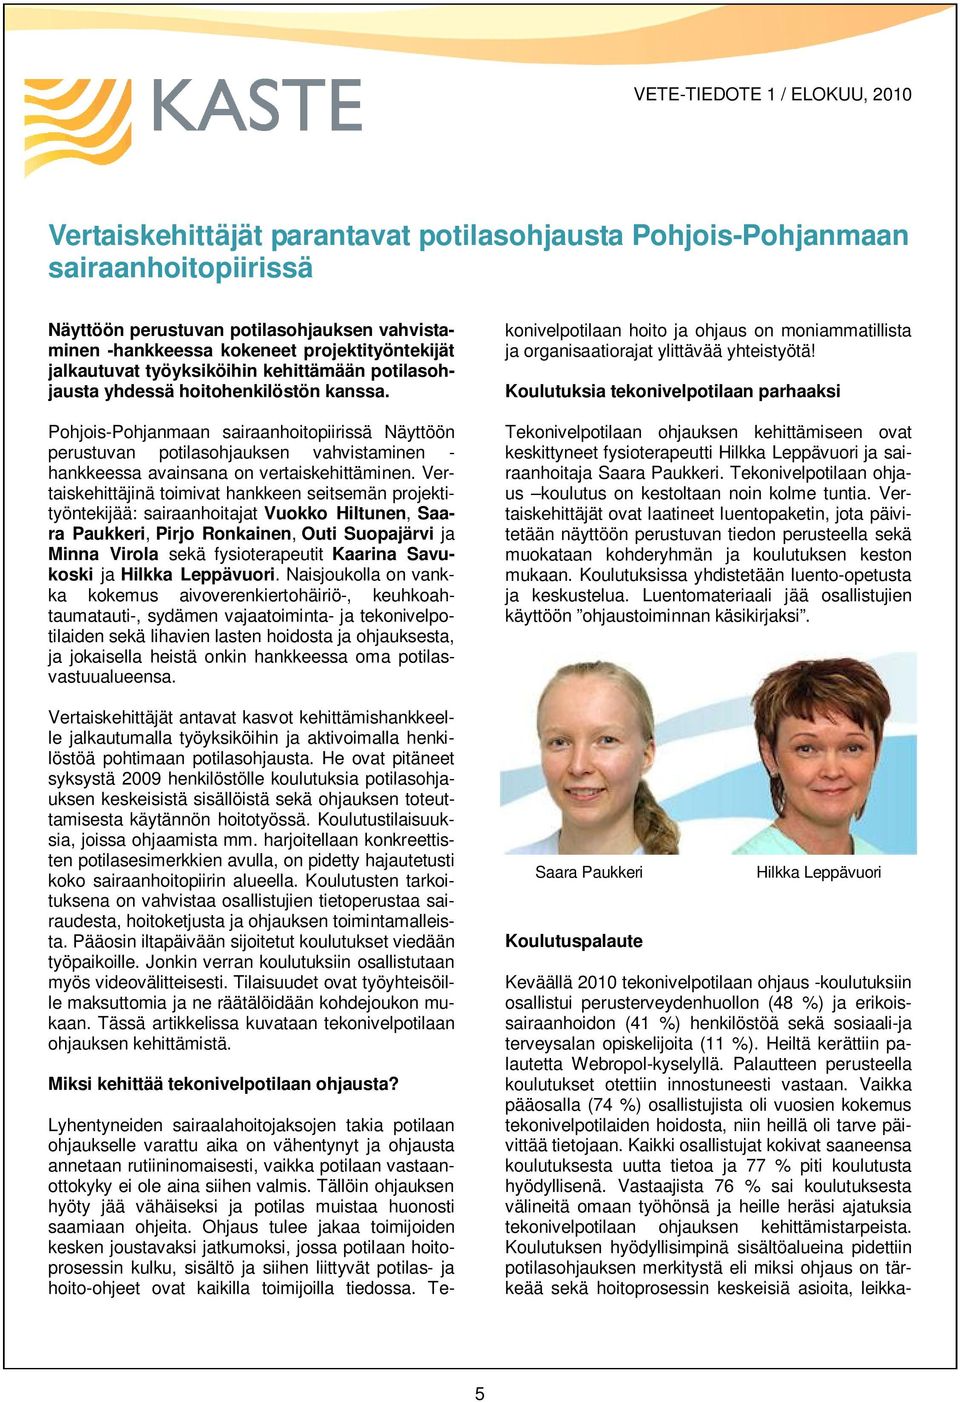 Pohjois-Pohjanmaan sairaanhoitopiirissä Näyttöön perustuvan potilasohjauksen vahvistaminen - hankkeessa avainsana on vertaiskehittäminen.